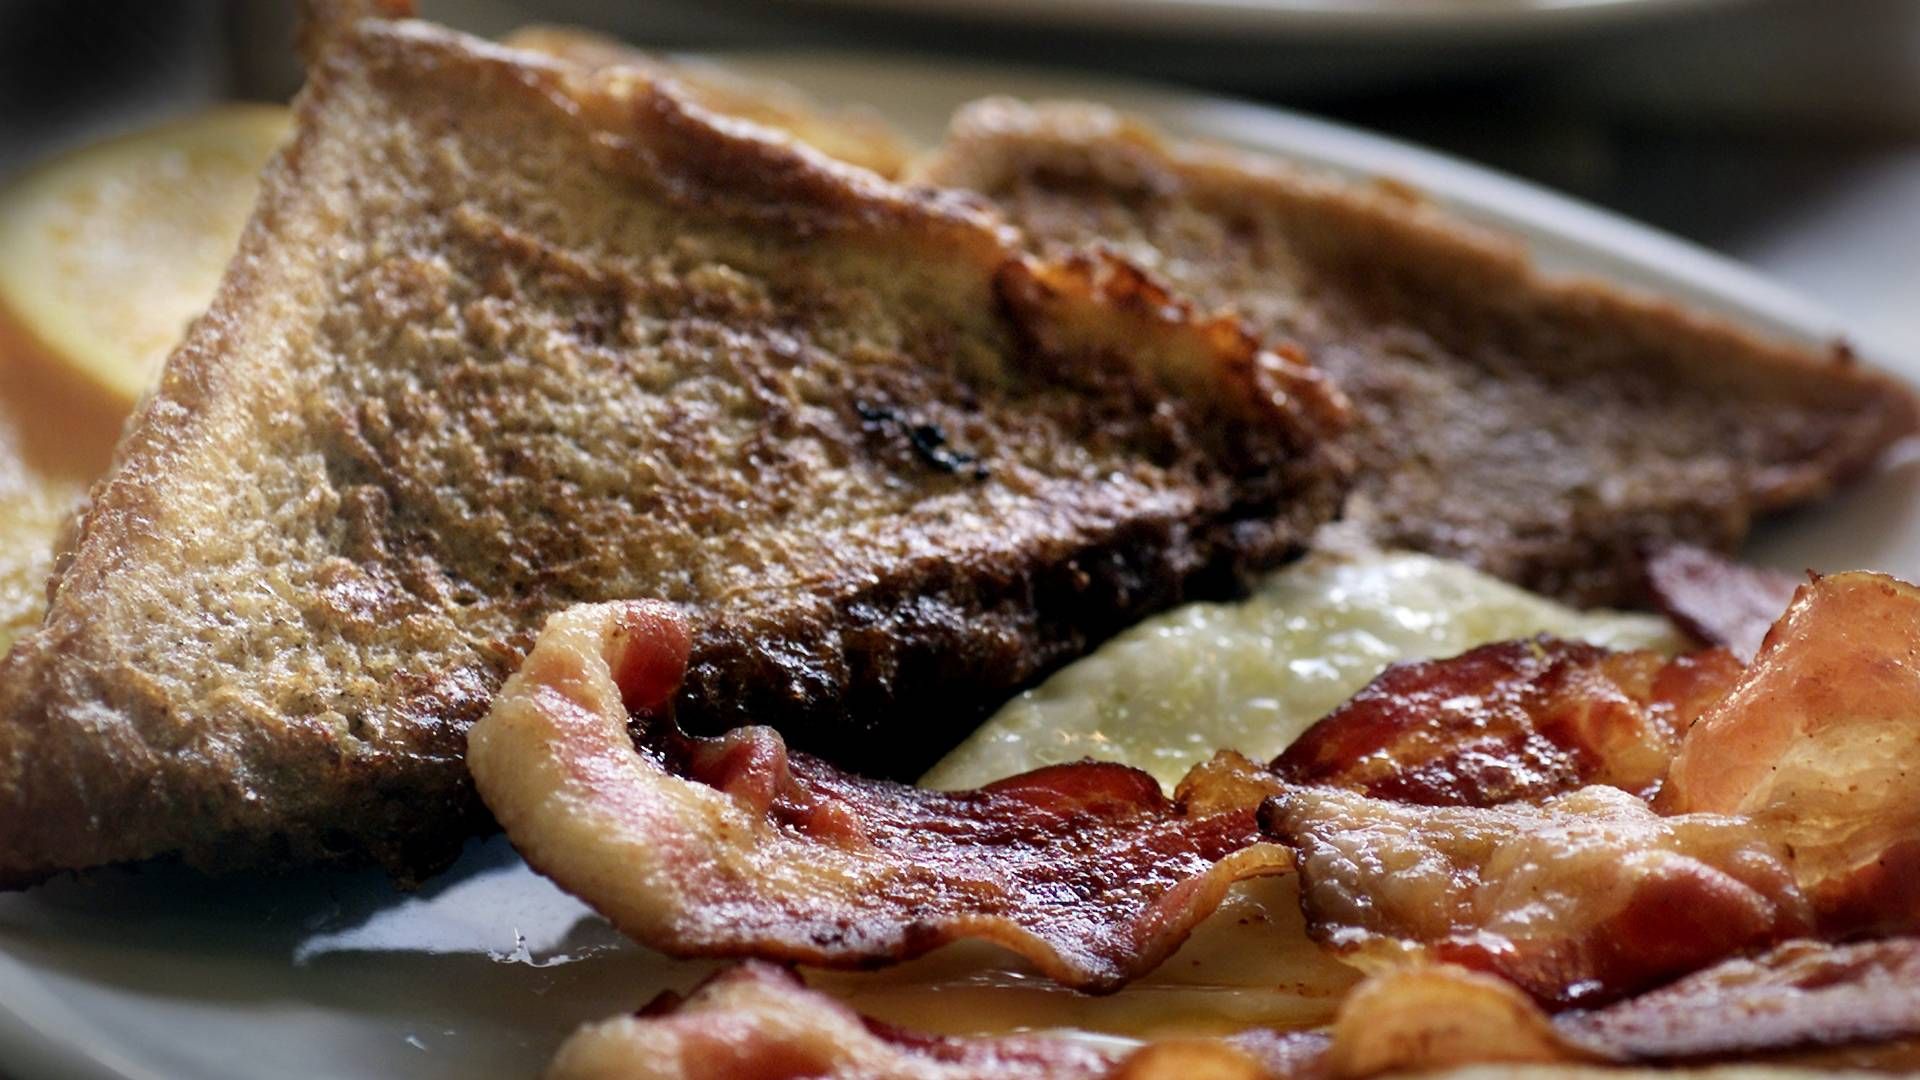 Danish Crown vil kæmpe for, at en traditionel "English breakfast" skal indeholde dansk bacon. | Foto: Kim Nielsen